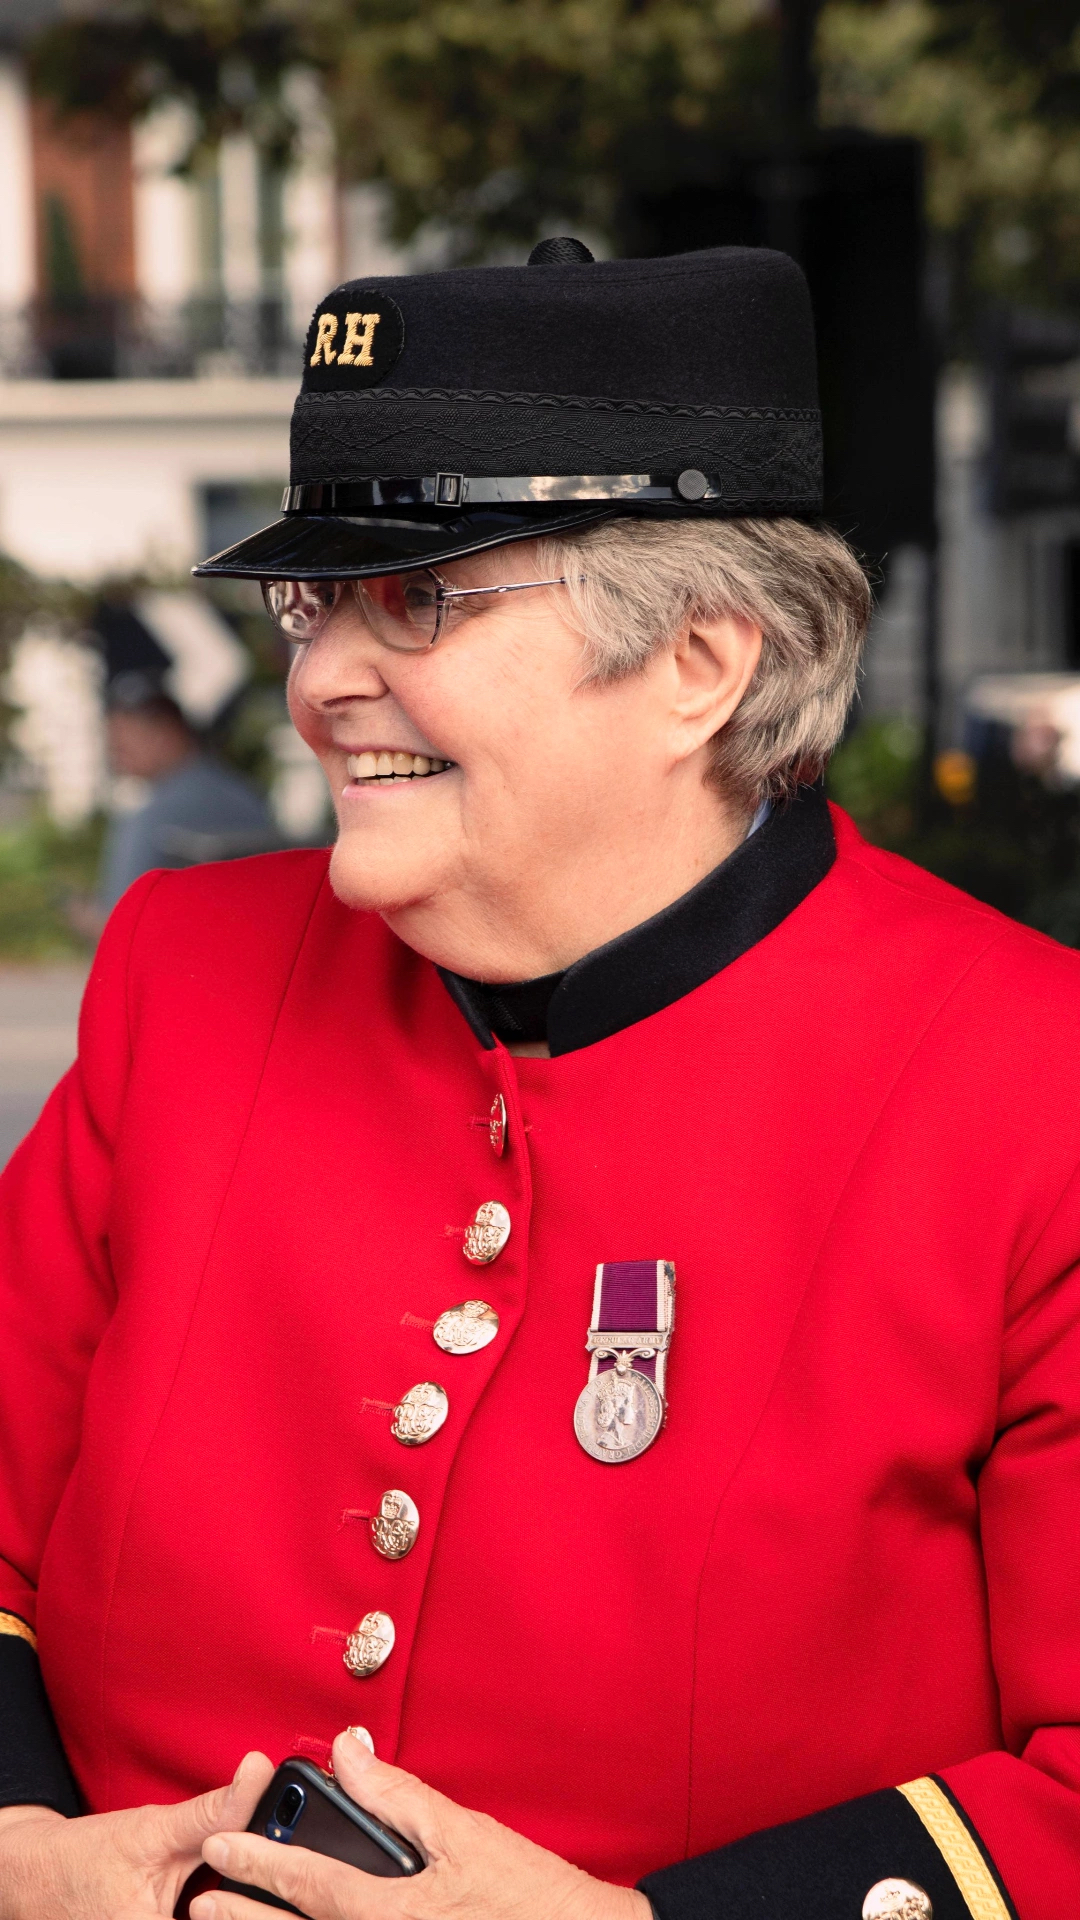 Chelsea Pensioner Jan Brodie Murphy in Scarlet uniform